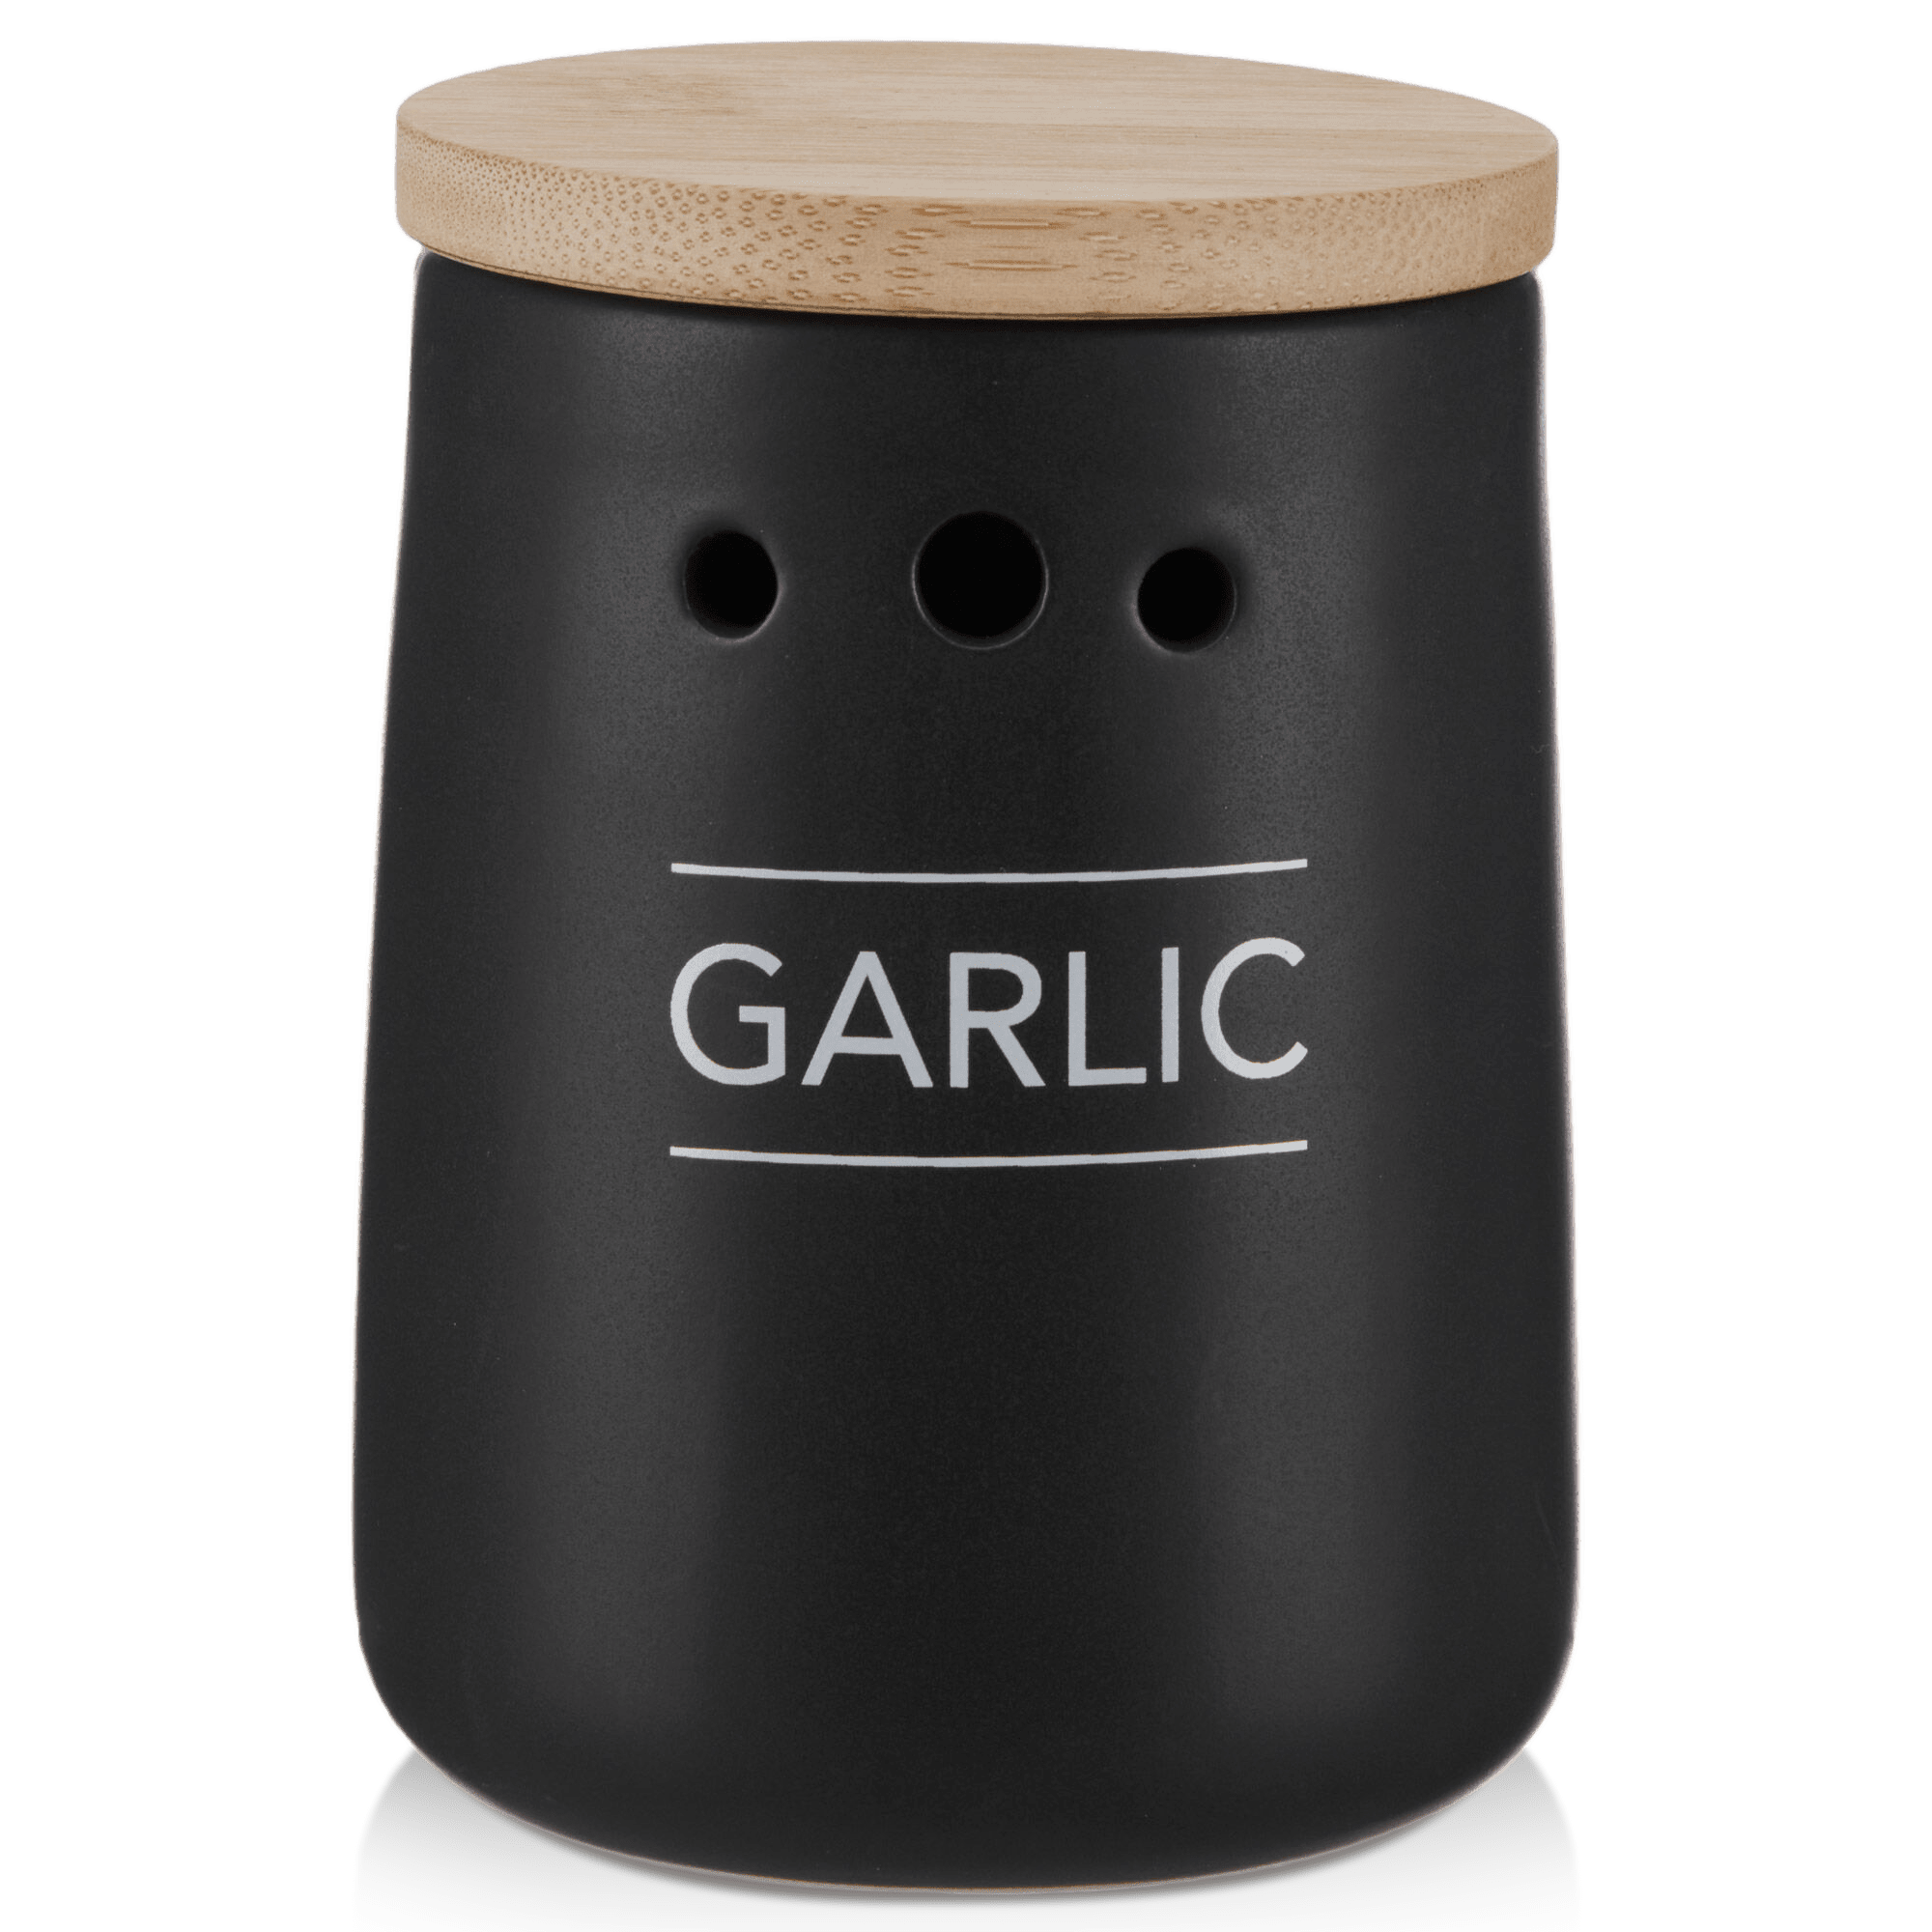 Black Ceramic Garlic Container